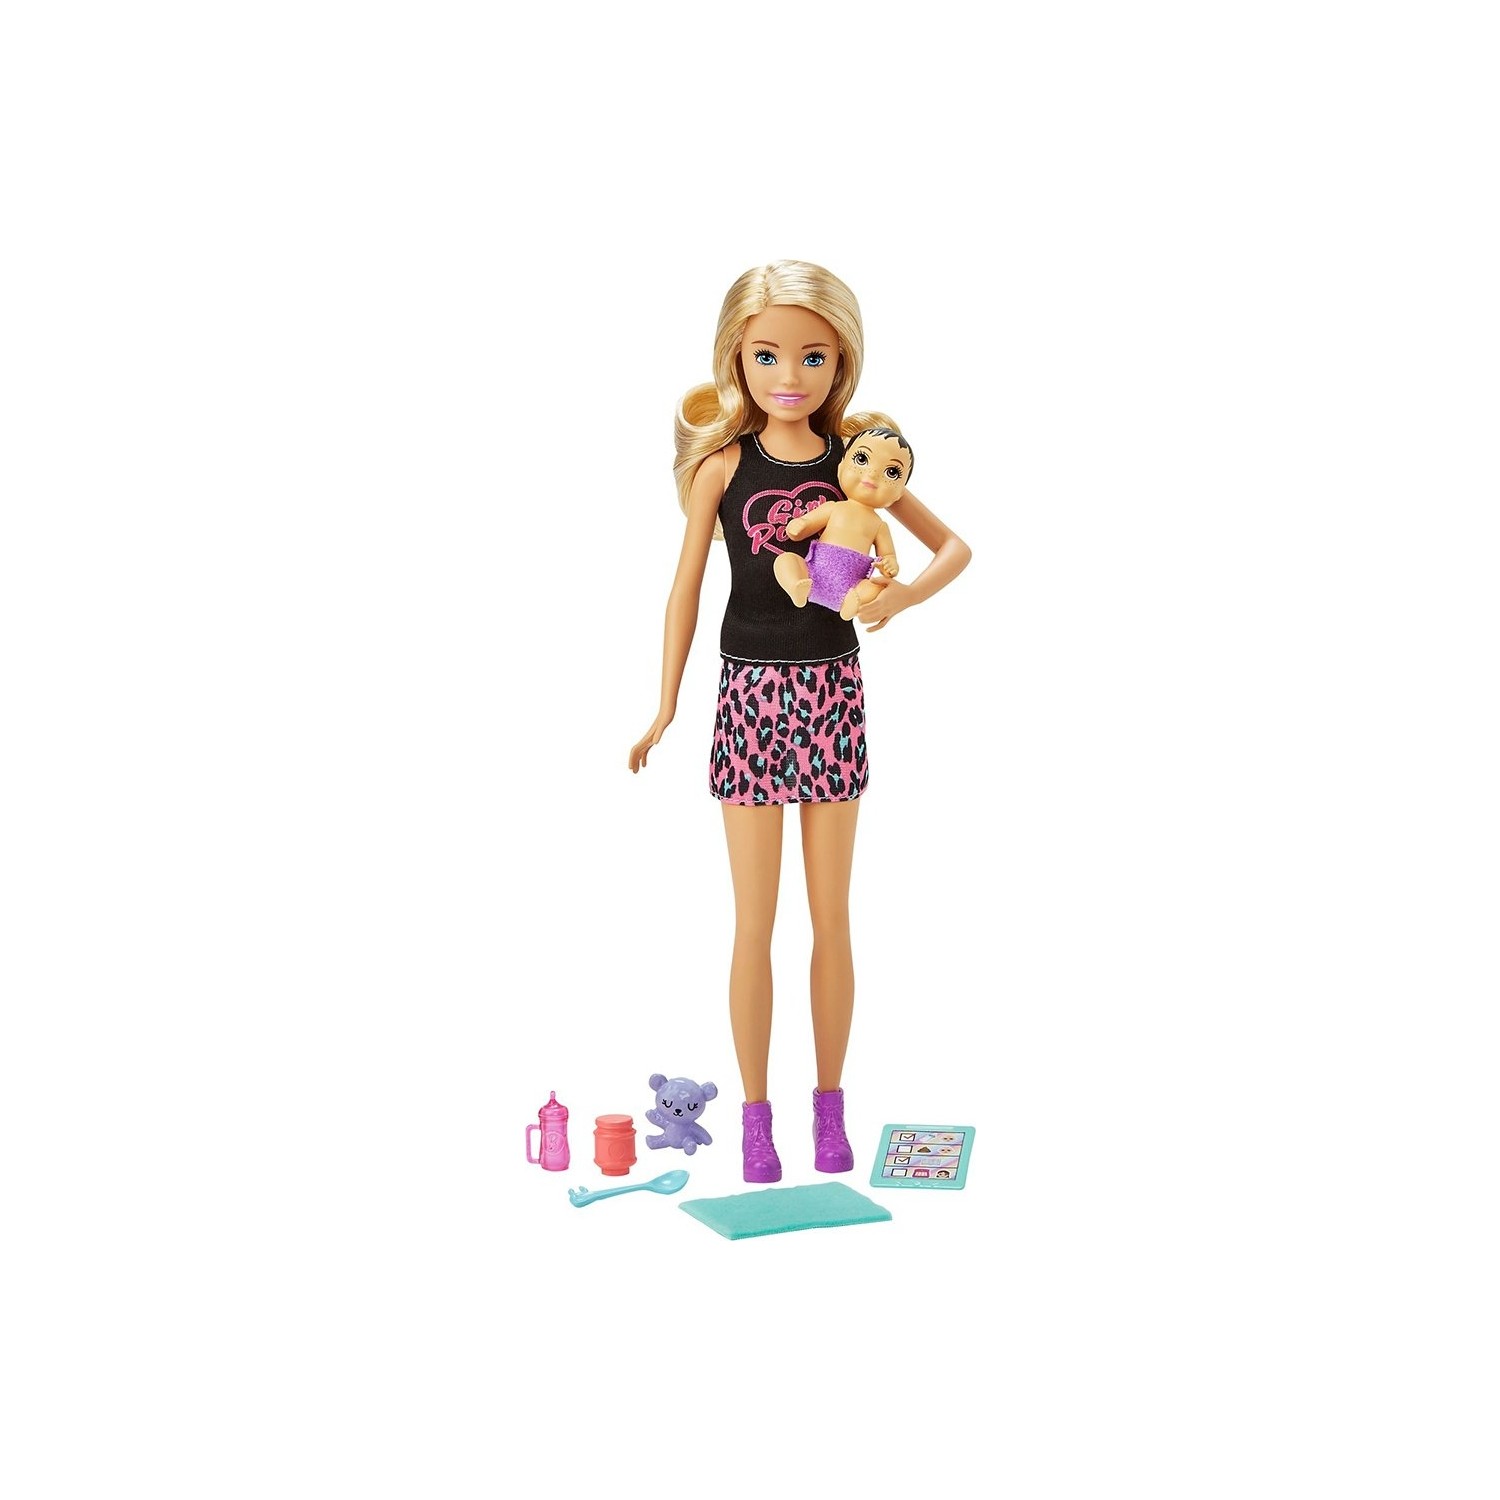 Игровой набор с куклой Barbie и аксессуарами GRP10 кукла барби с очками и сумочкой 29 см игровой набор барби с аксессуарами интерактивная игрушка кукла